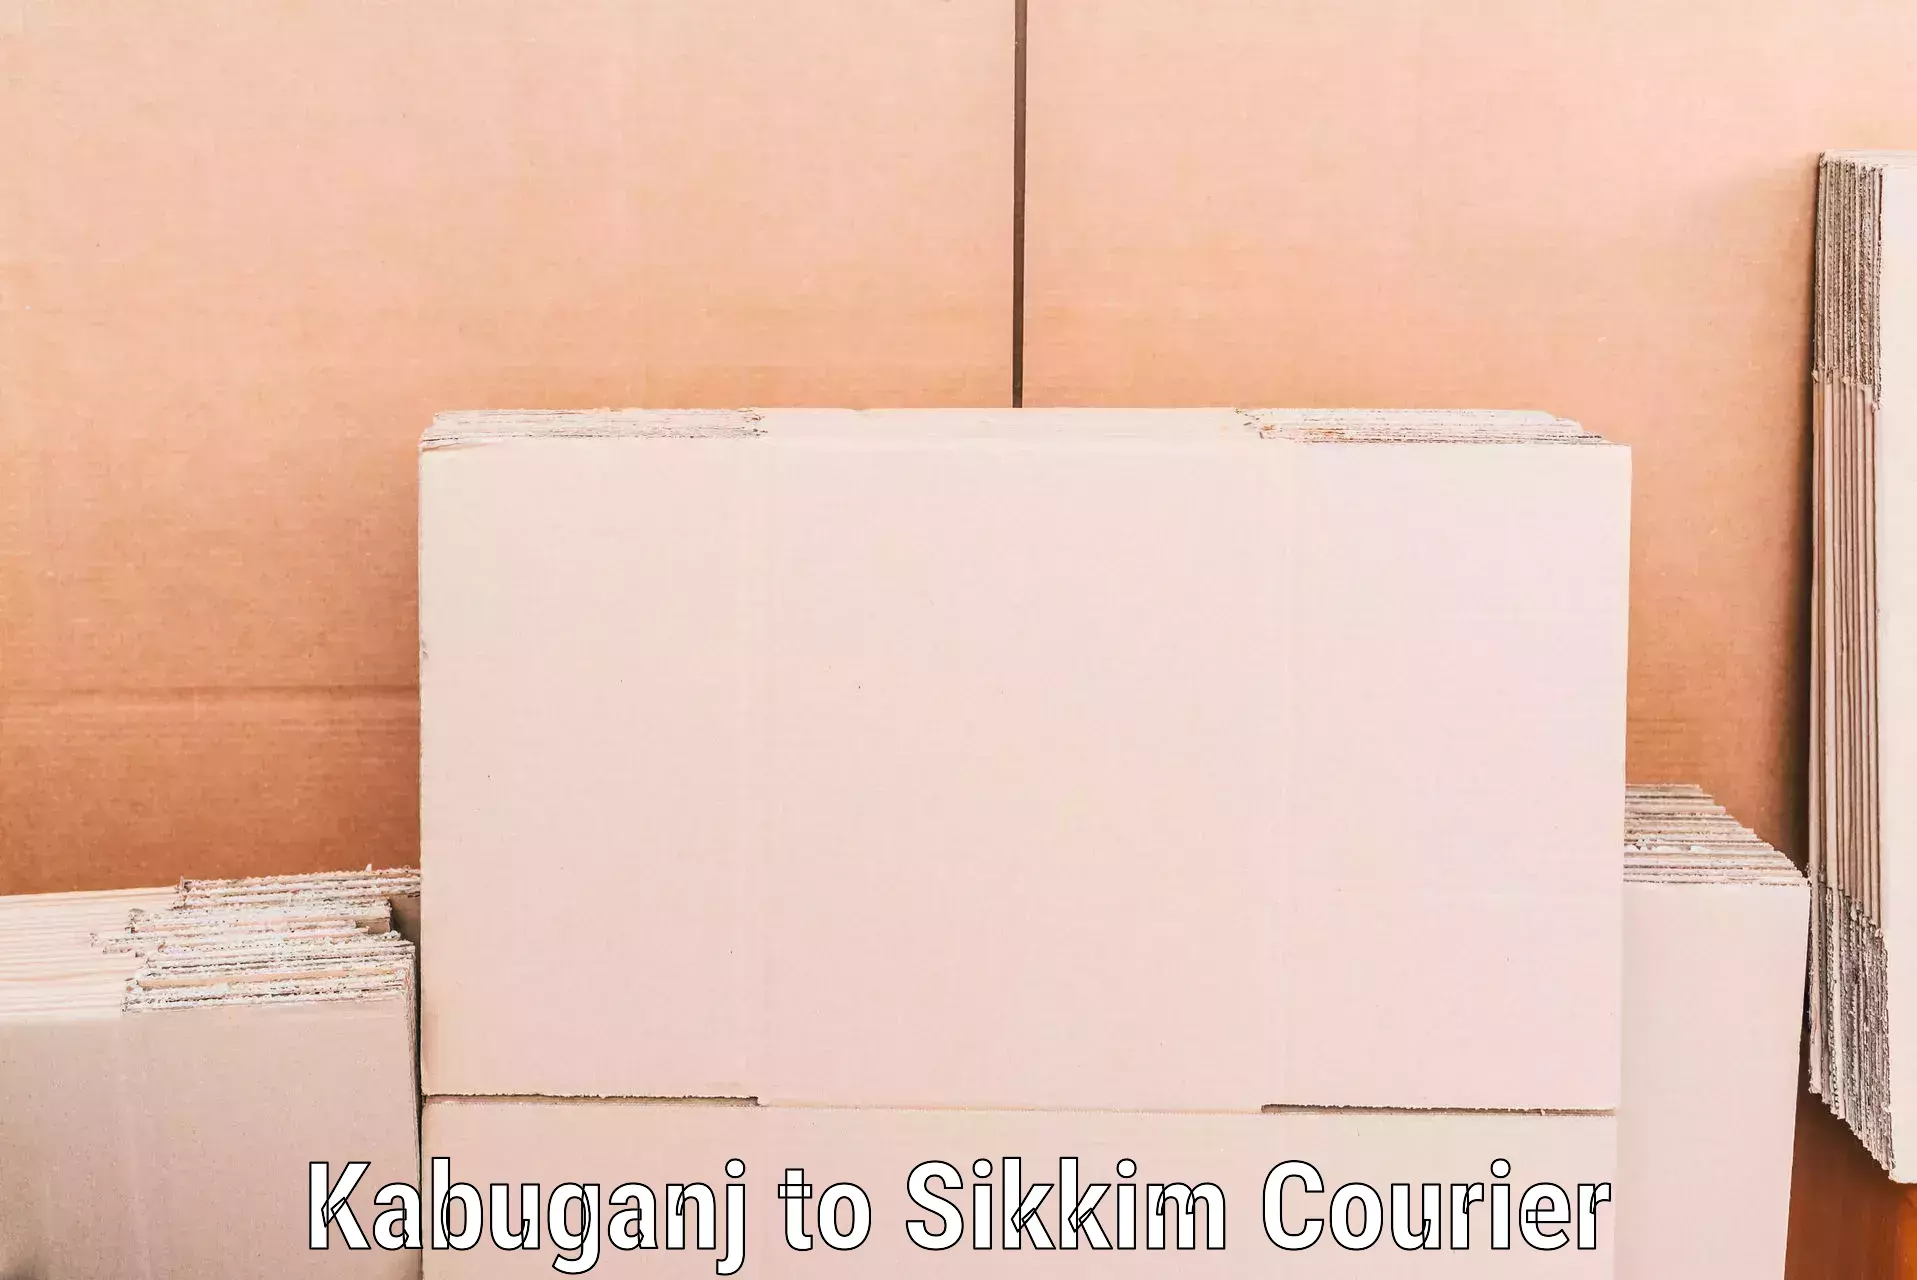 Furniture moving experts Kabuganj to Pelling